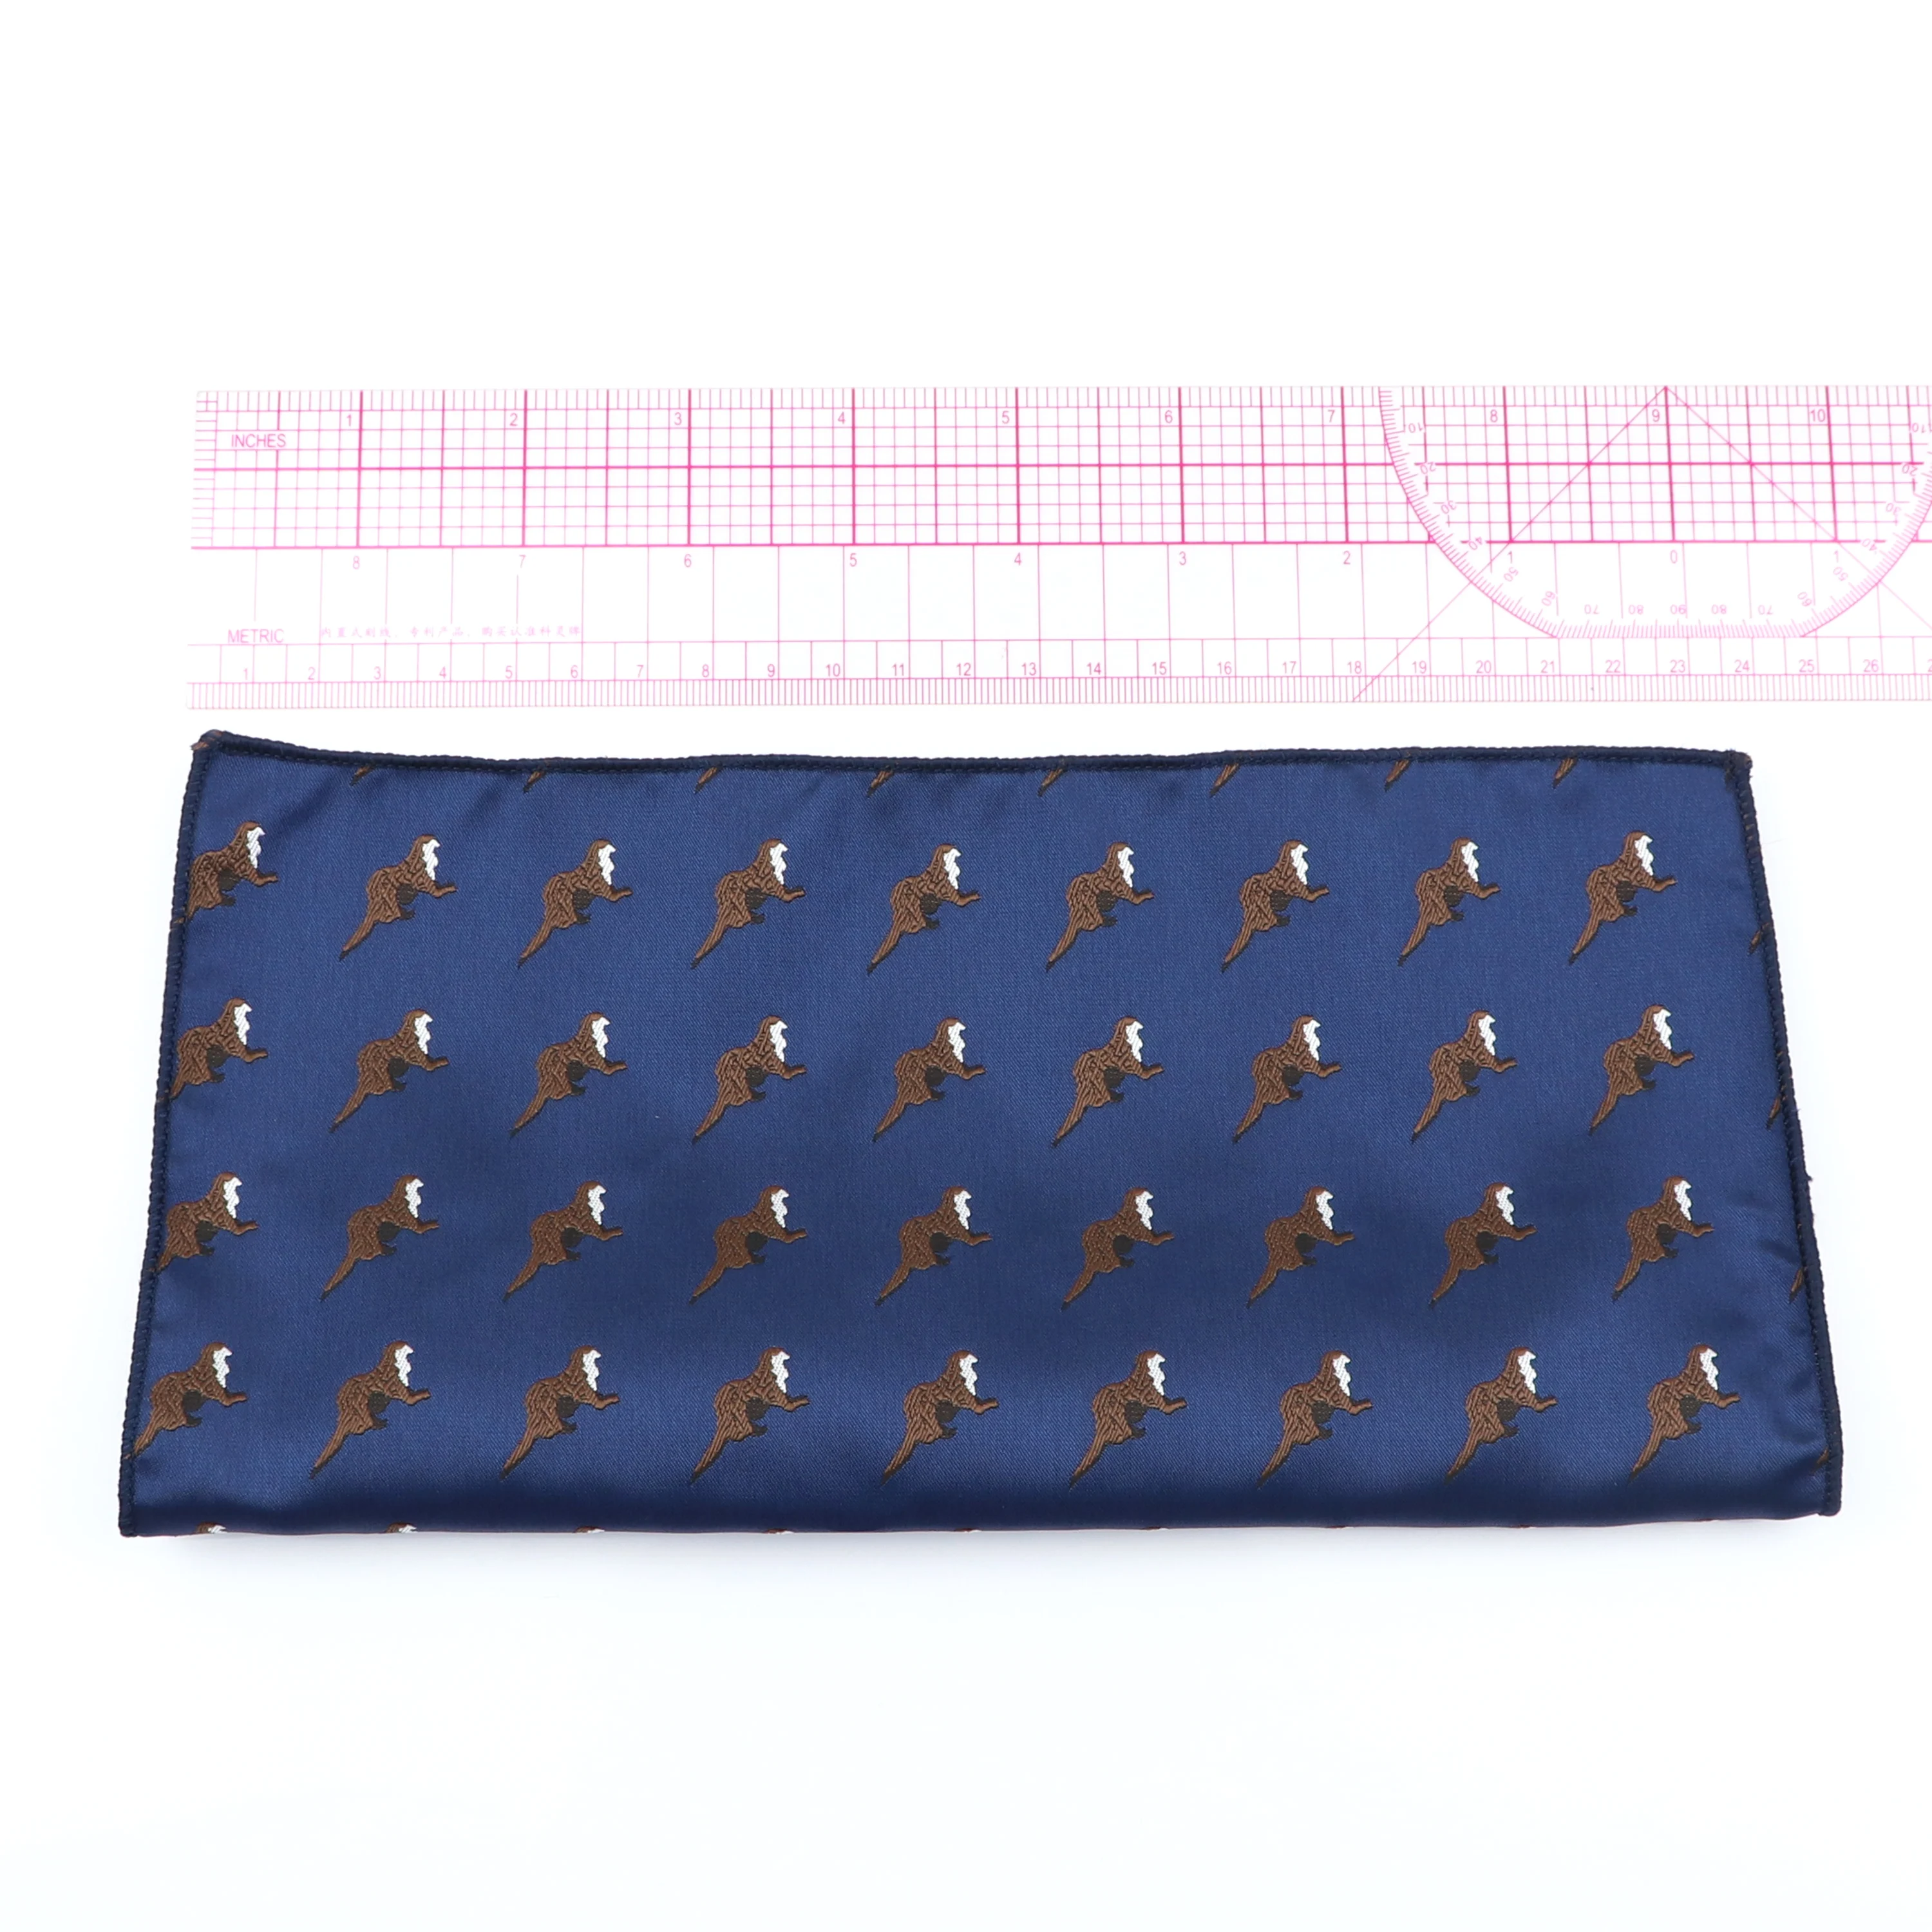 Mouchoir de poche imprimé en polyester pour hommes et femmes, mouchoir bleu, nœud de smoking, accessoires de mode décontractés, cadeau de fête